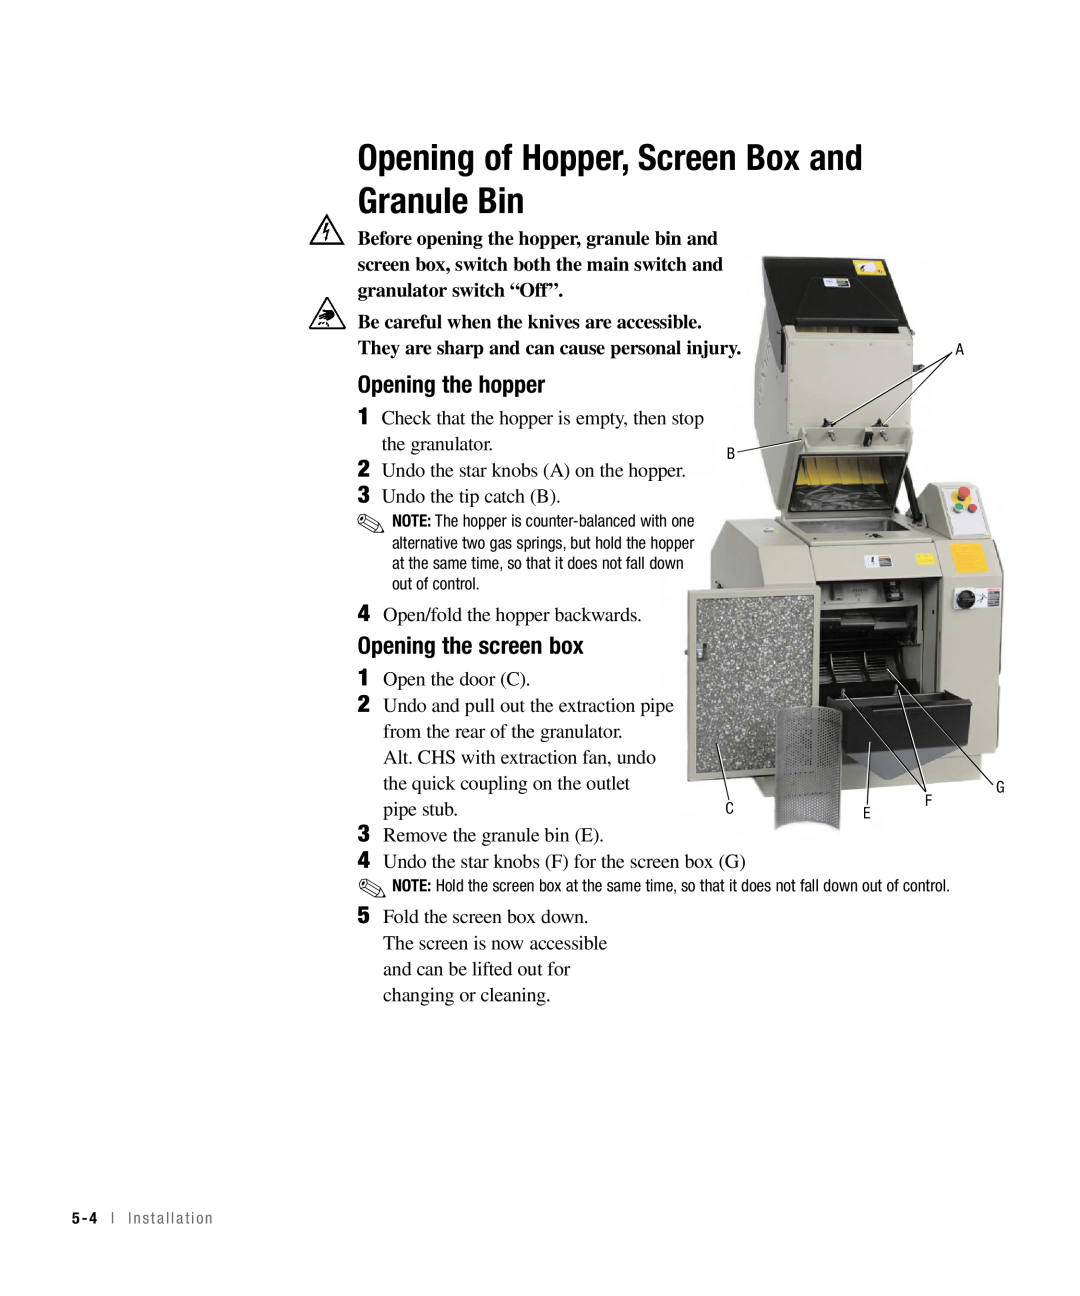 Conair CHS-810 manual Opening of Hopper, Screen Box and Granule Bin, Opening the hopper, Opening the screen box 